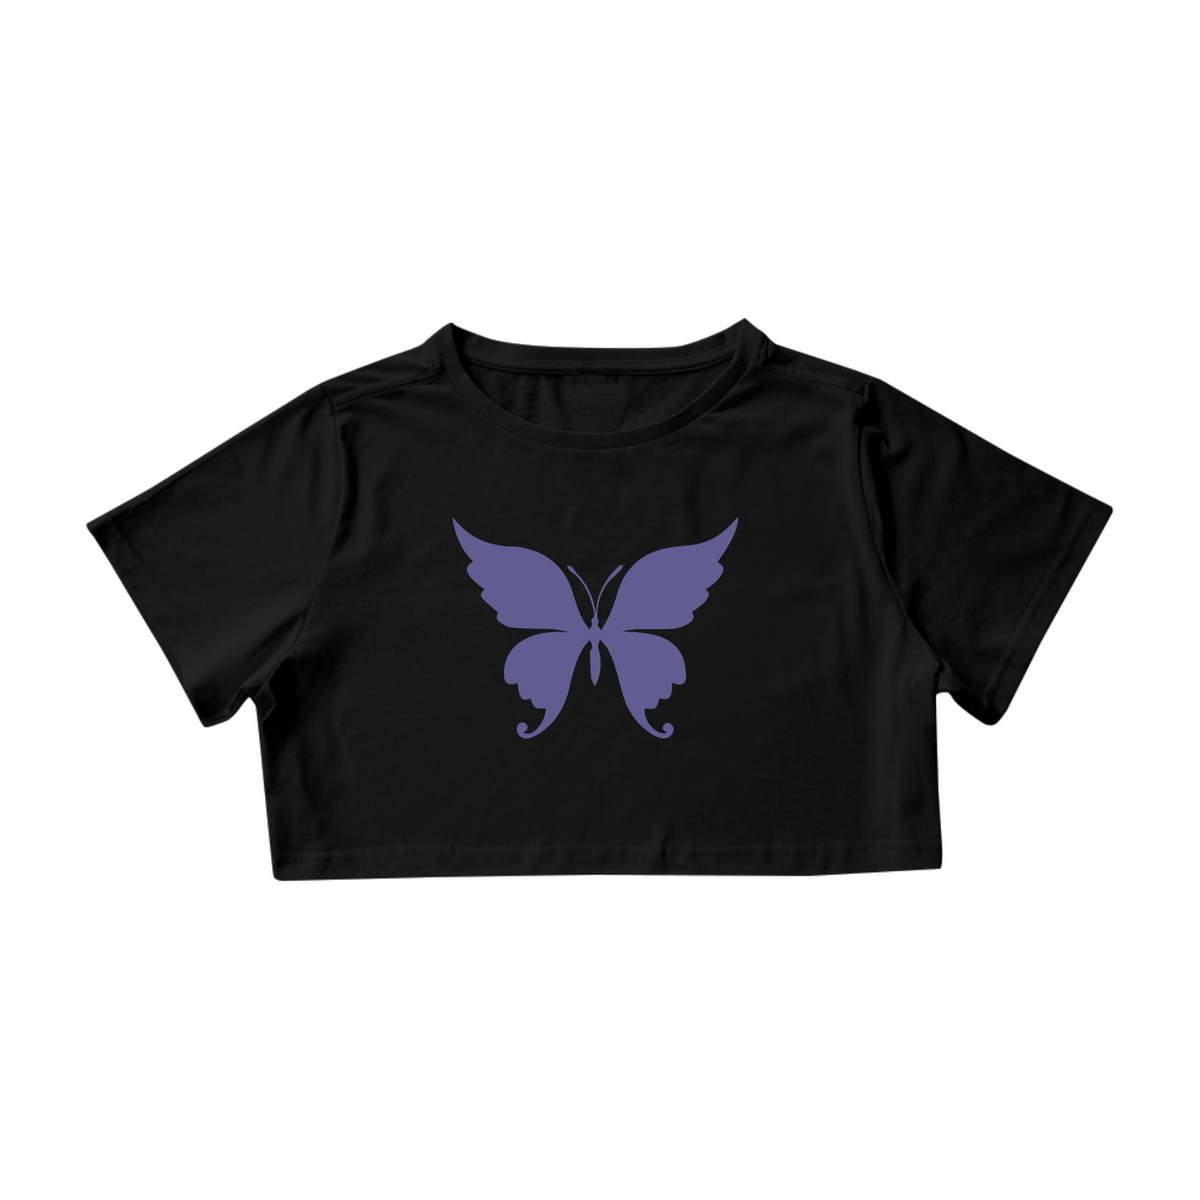 Nome do produto: Cropped preto e branco de borboleta